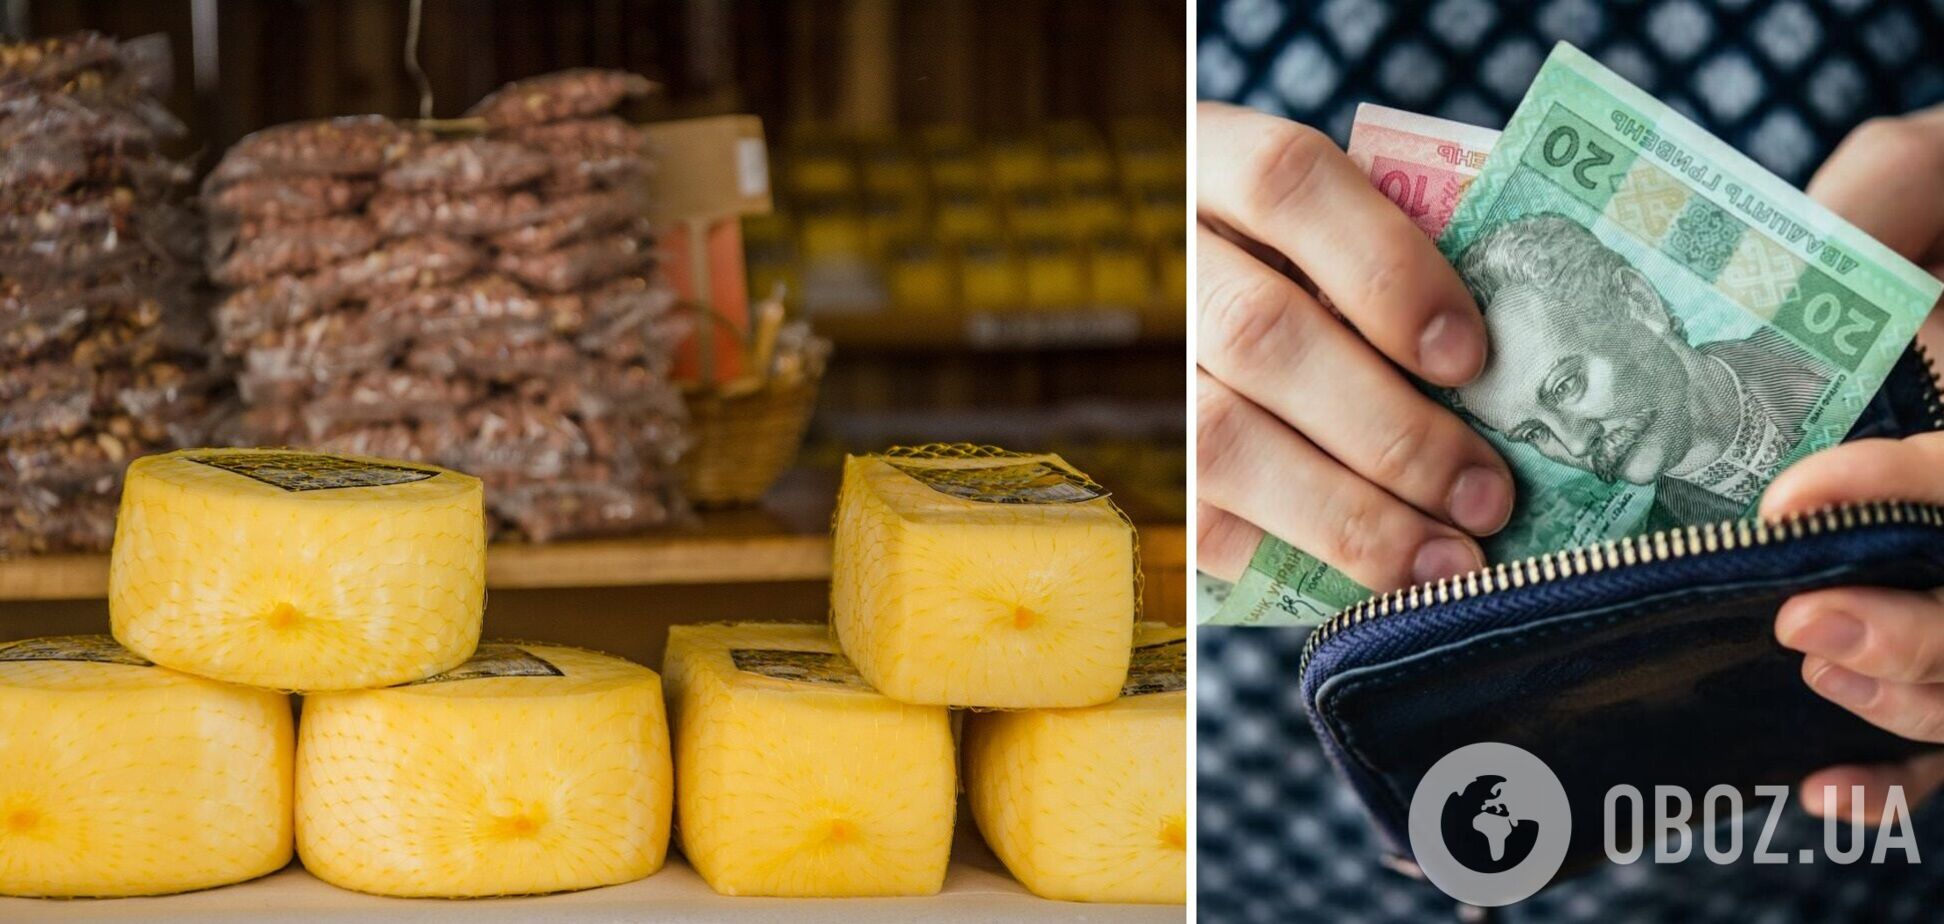 Накануне зимних праздников в Украину ввезли около 4 тыс. тонн сыра